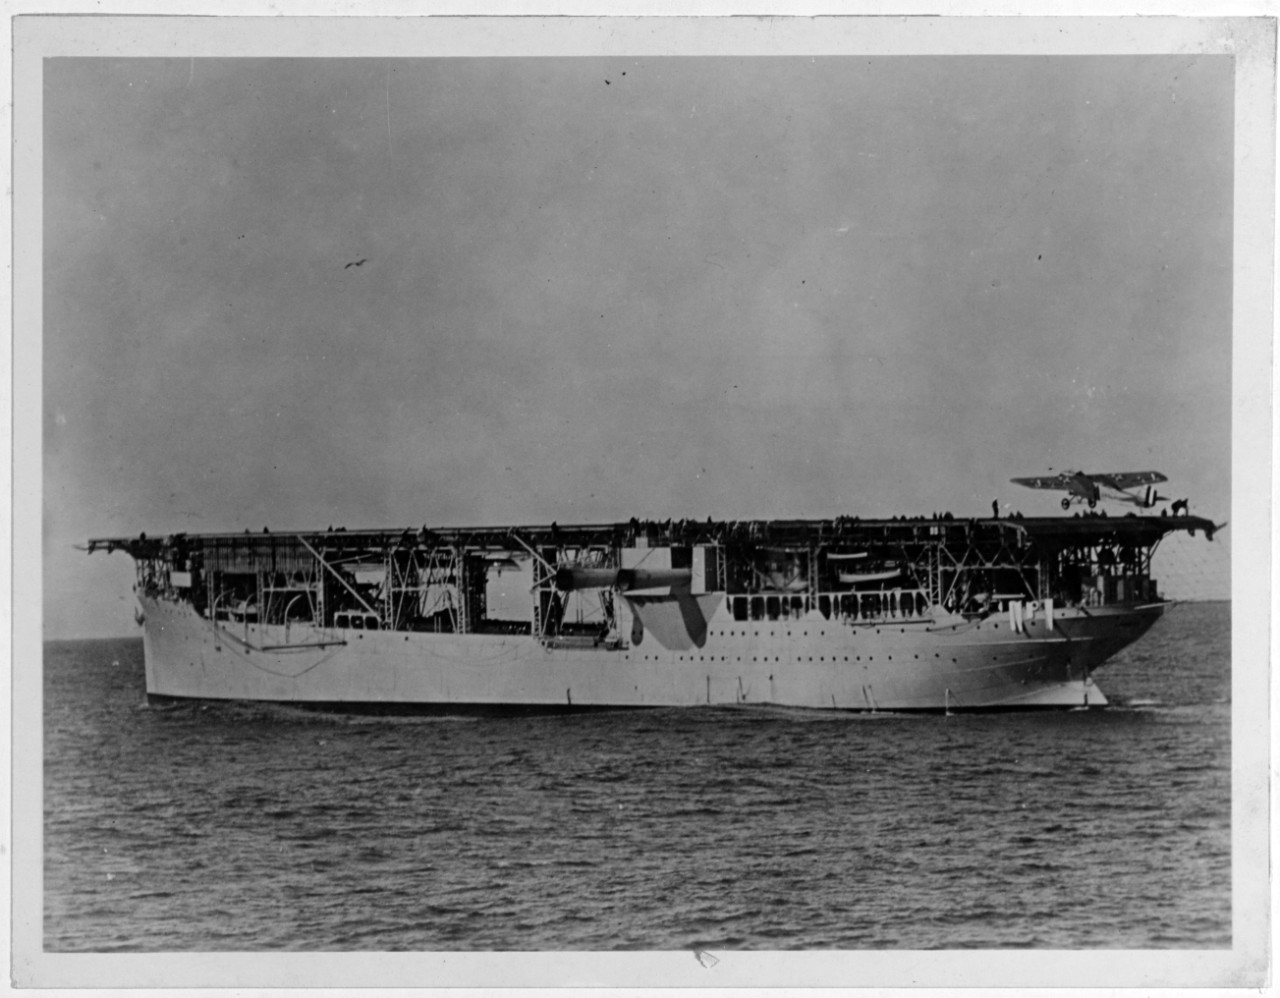 Photograph of Langley at sea